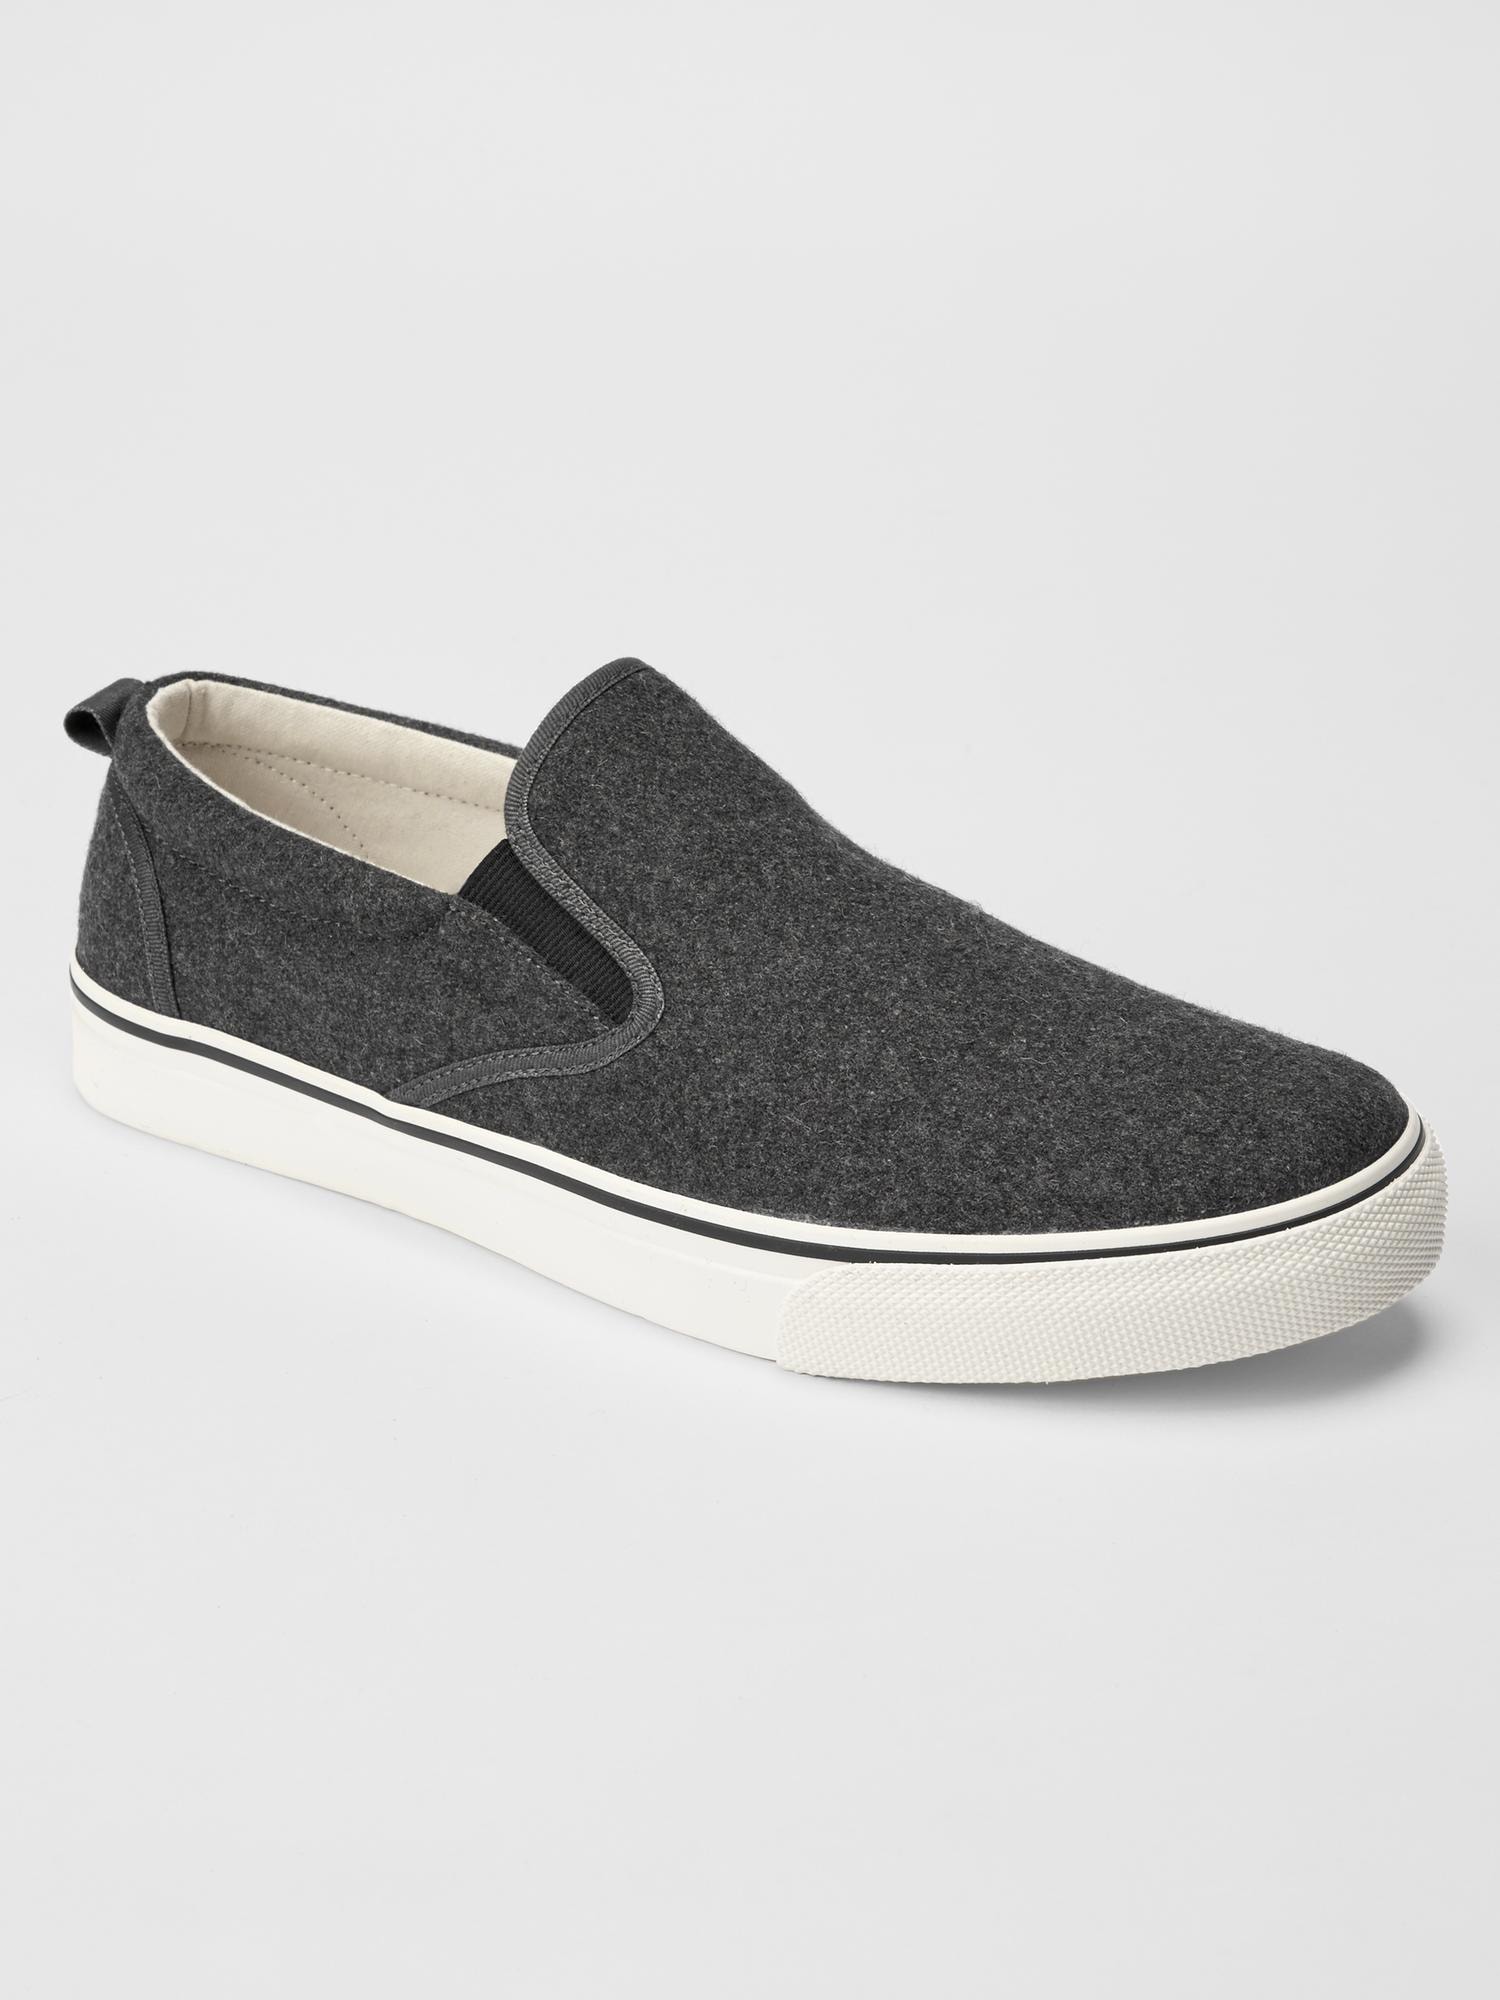 Wool slip-on sneakers | Gap